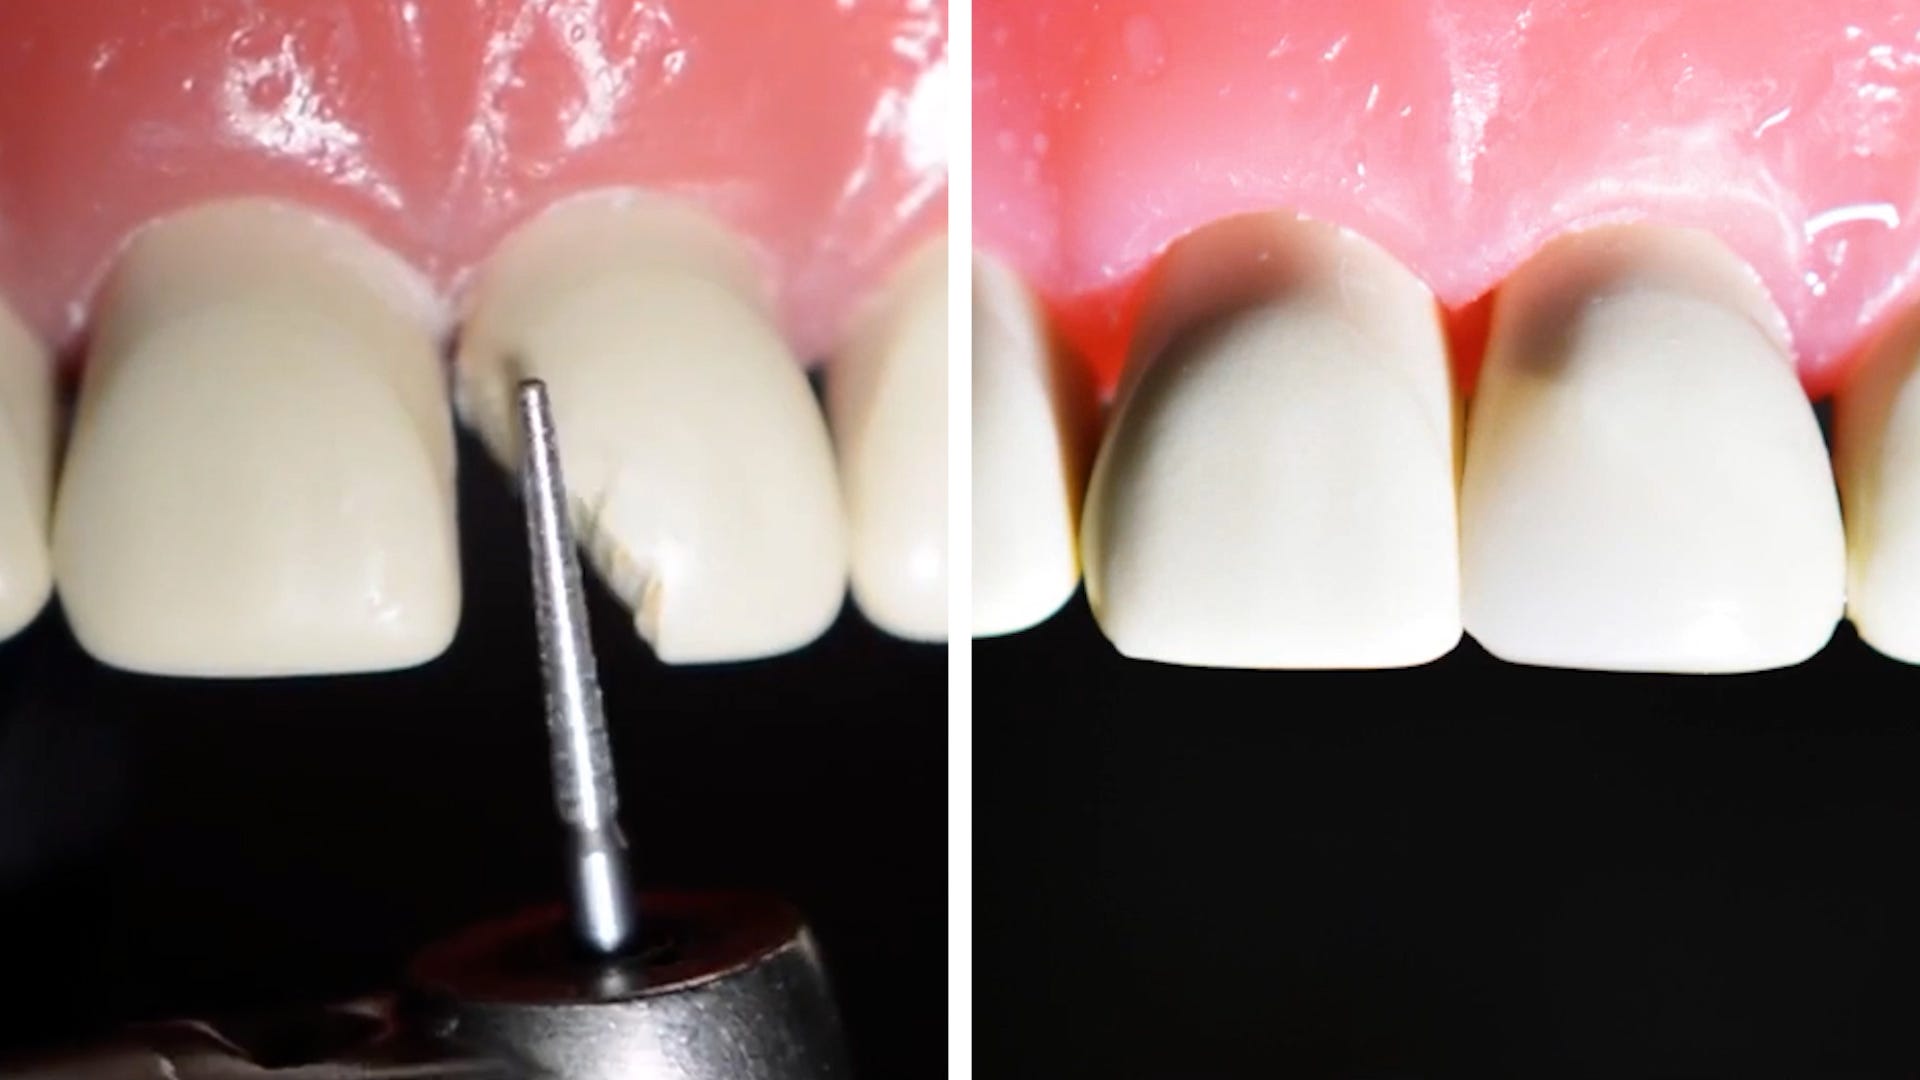 Eine Vorher-Nachher-Aufnahme des Zahns nebeneinander zeigt, dass der gebrochene Zahn vollständig repariert wurde.